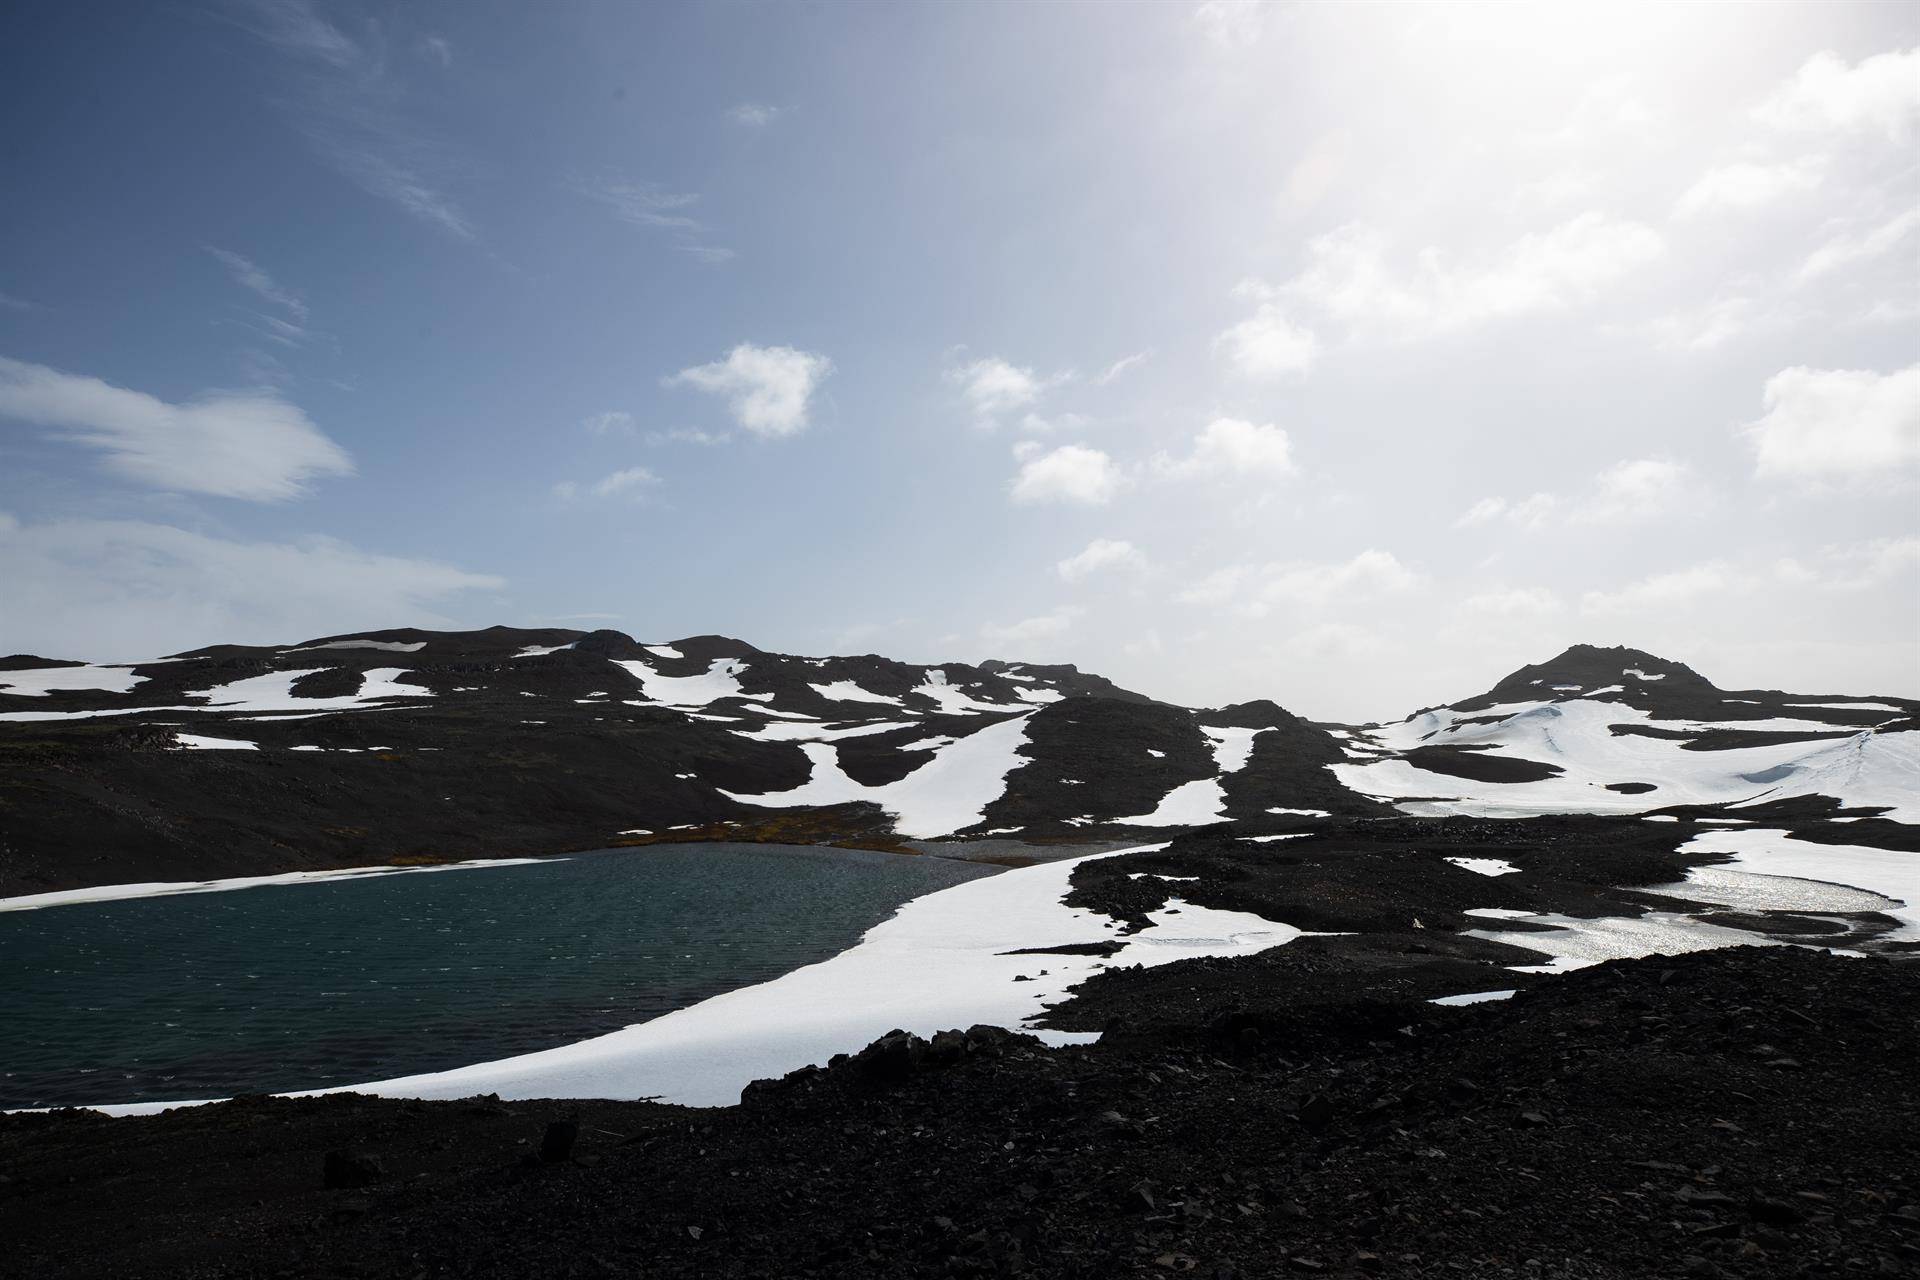 Rocas en la zona costera de la Antártica registraron temperaturas de 34°C en enero